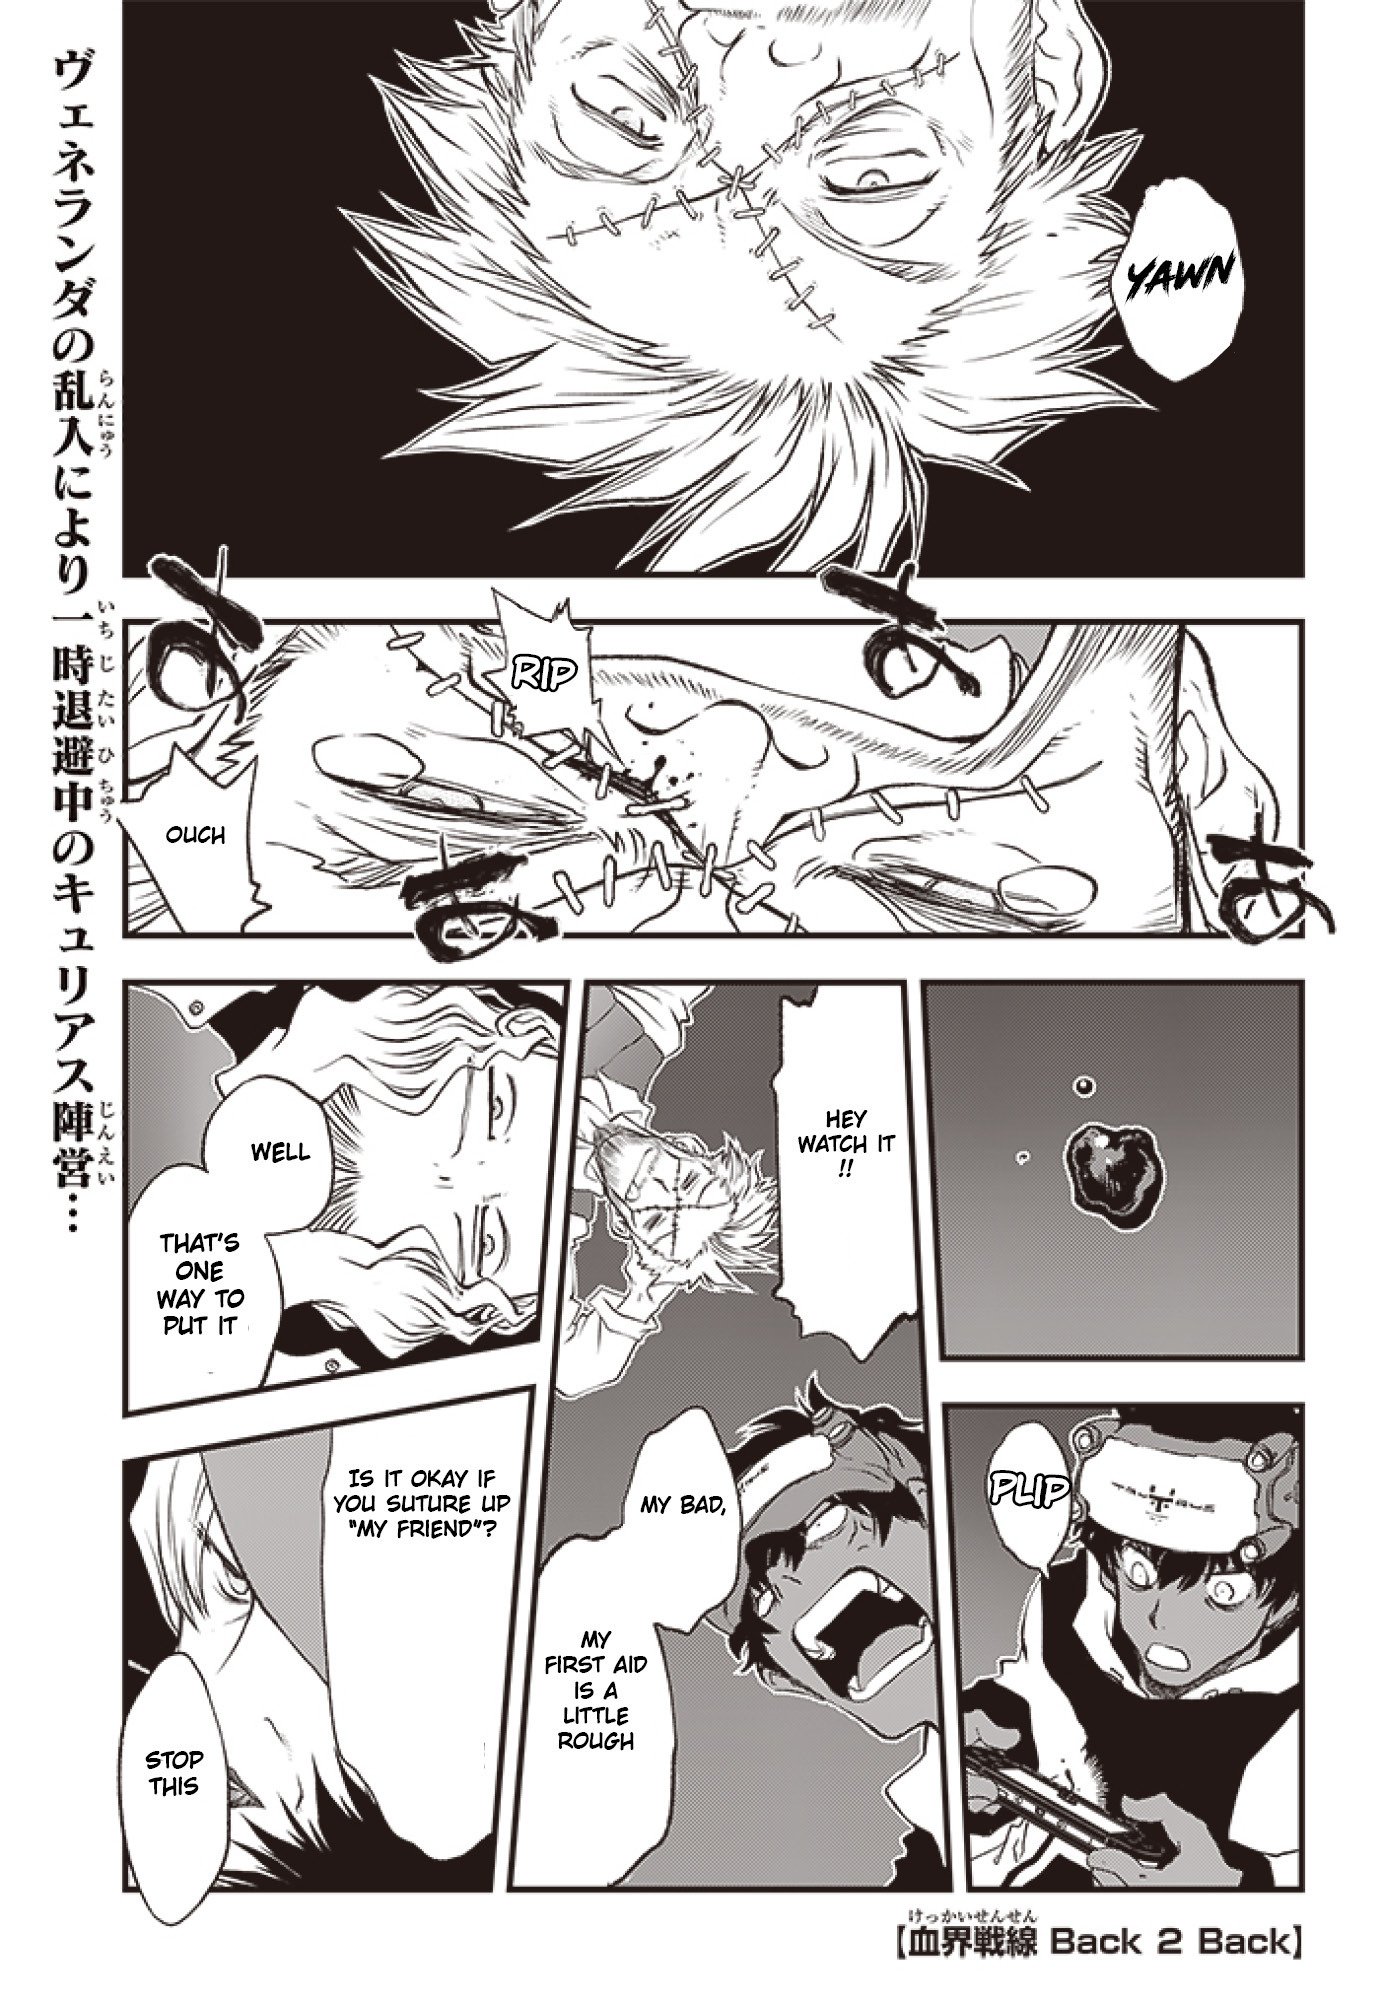 Kekkai Sensen - Back 2 Back vol.8 ch.23